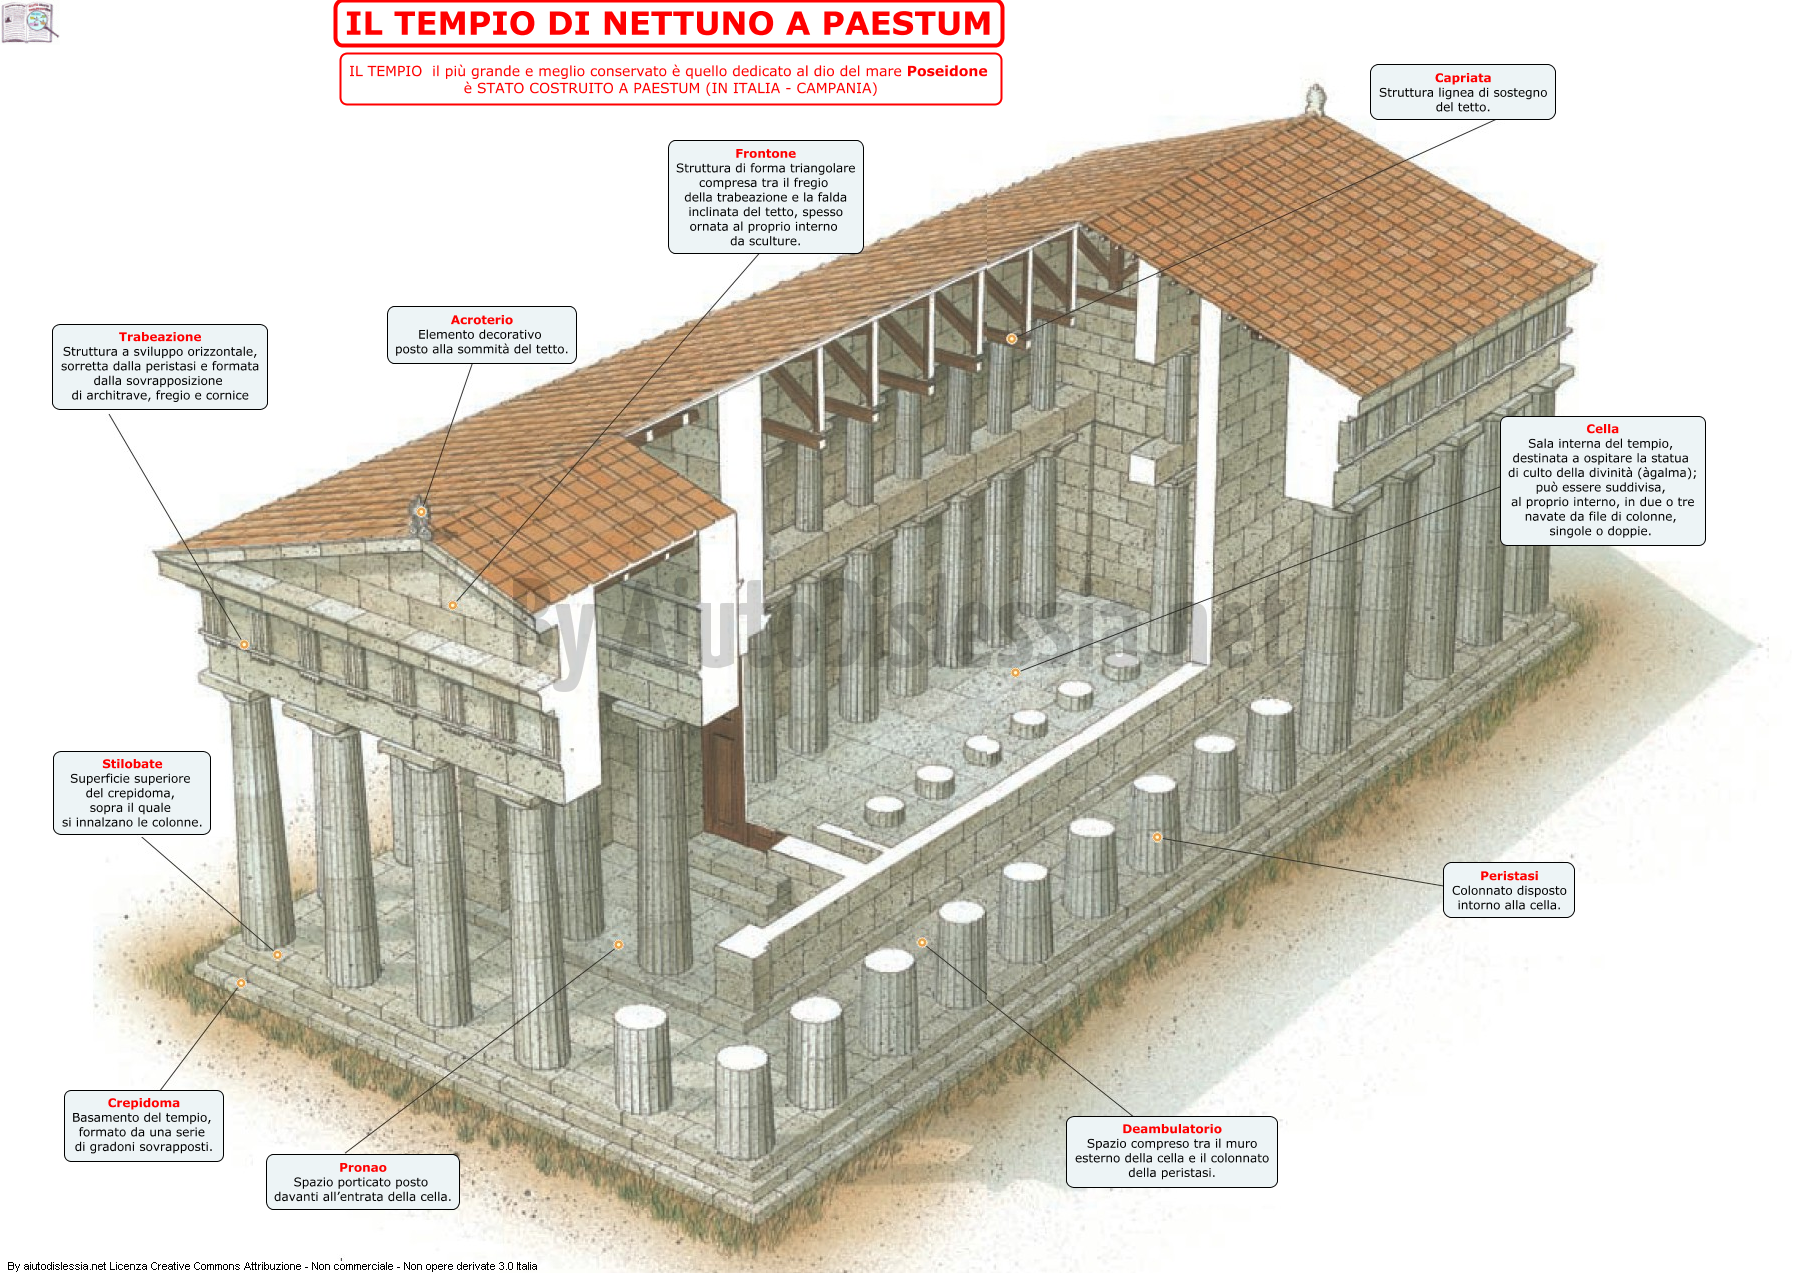 05-il-tempio-di-nettuno-a-paestum